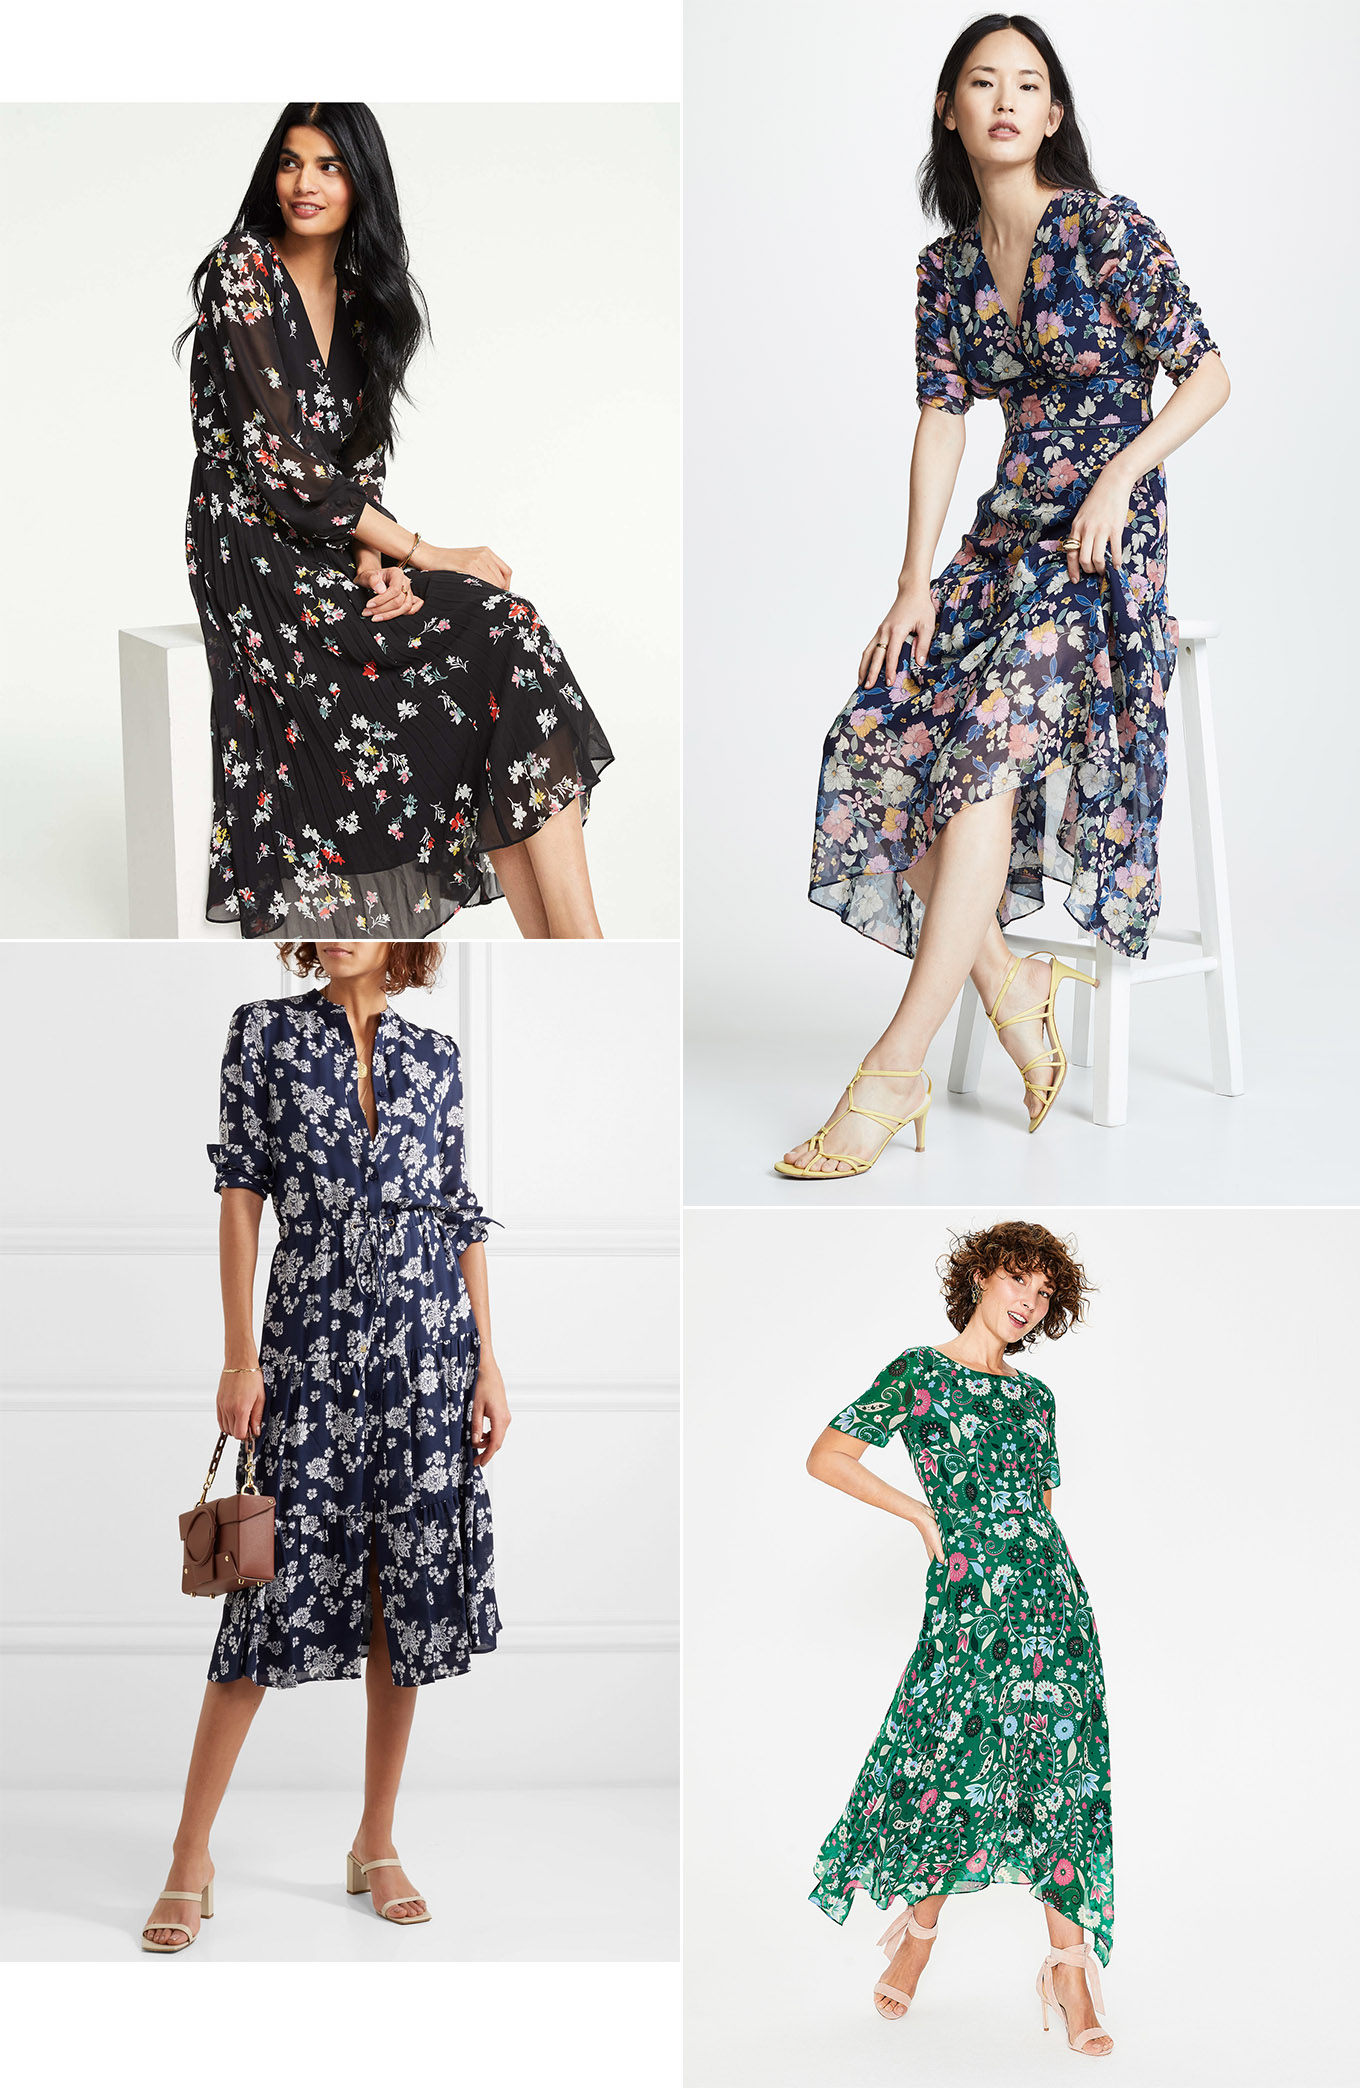 floral spring dresses 2019